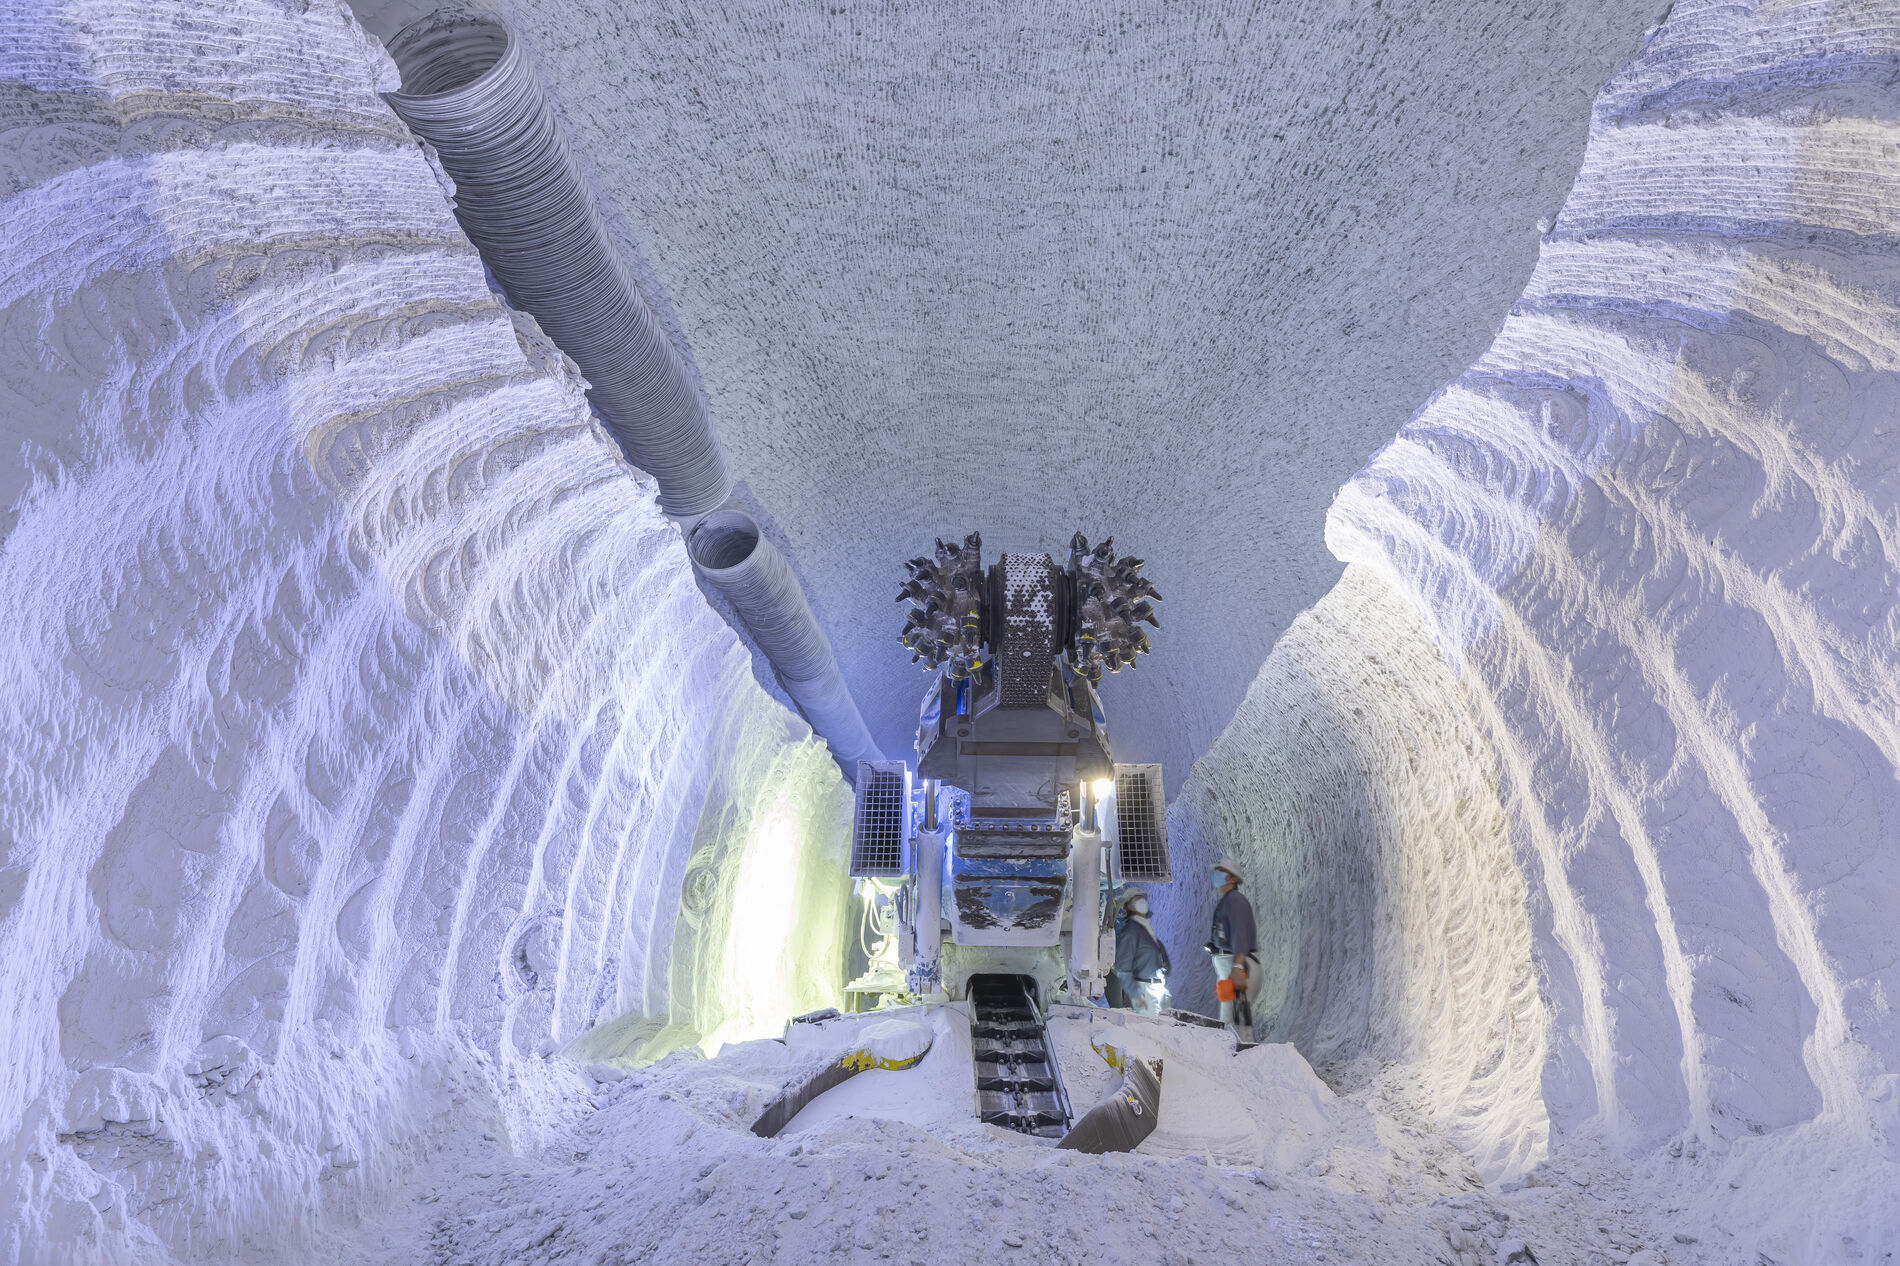 Zwei Bergleute stehen neben einer großen Maschine in einer weißen Kammer aus Salz unter Tage.